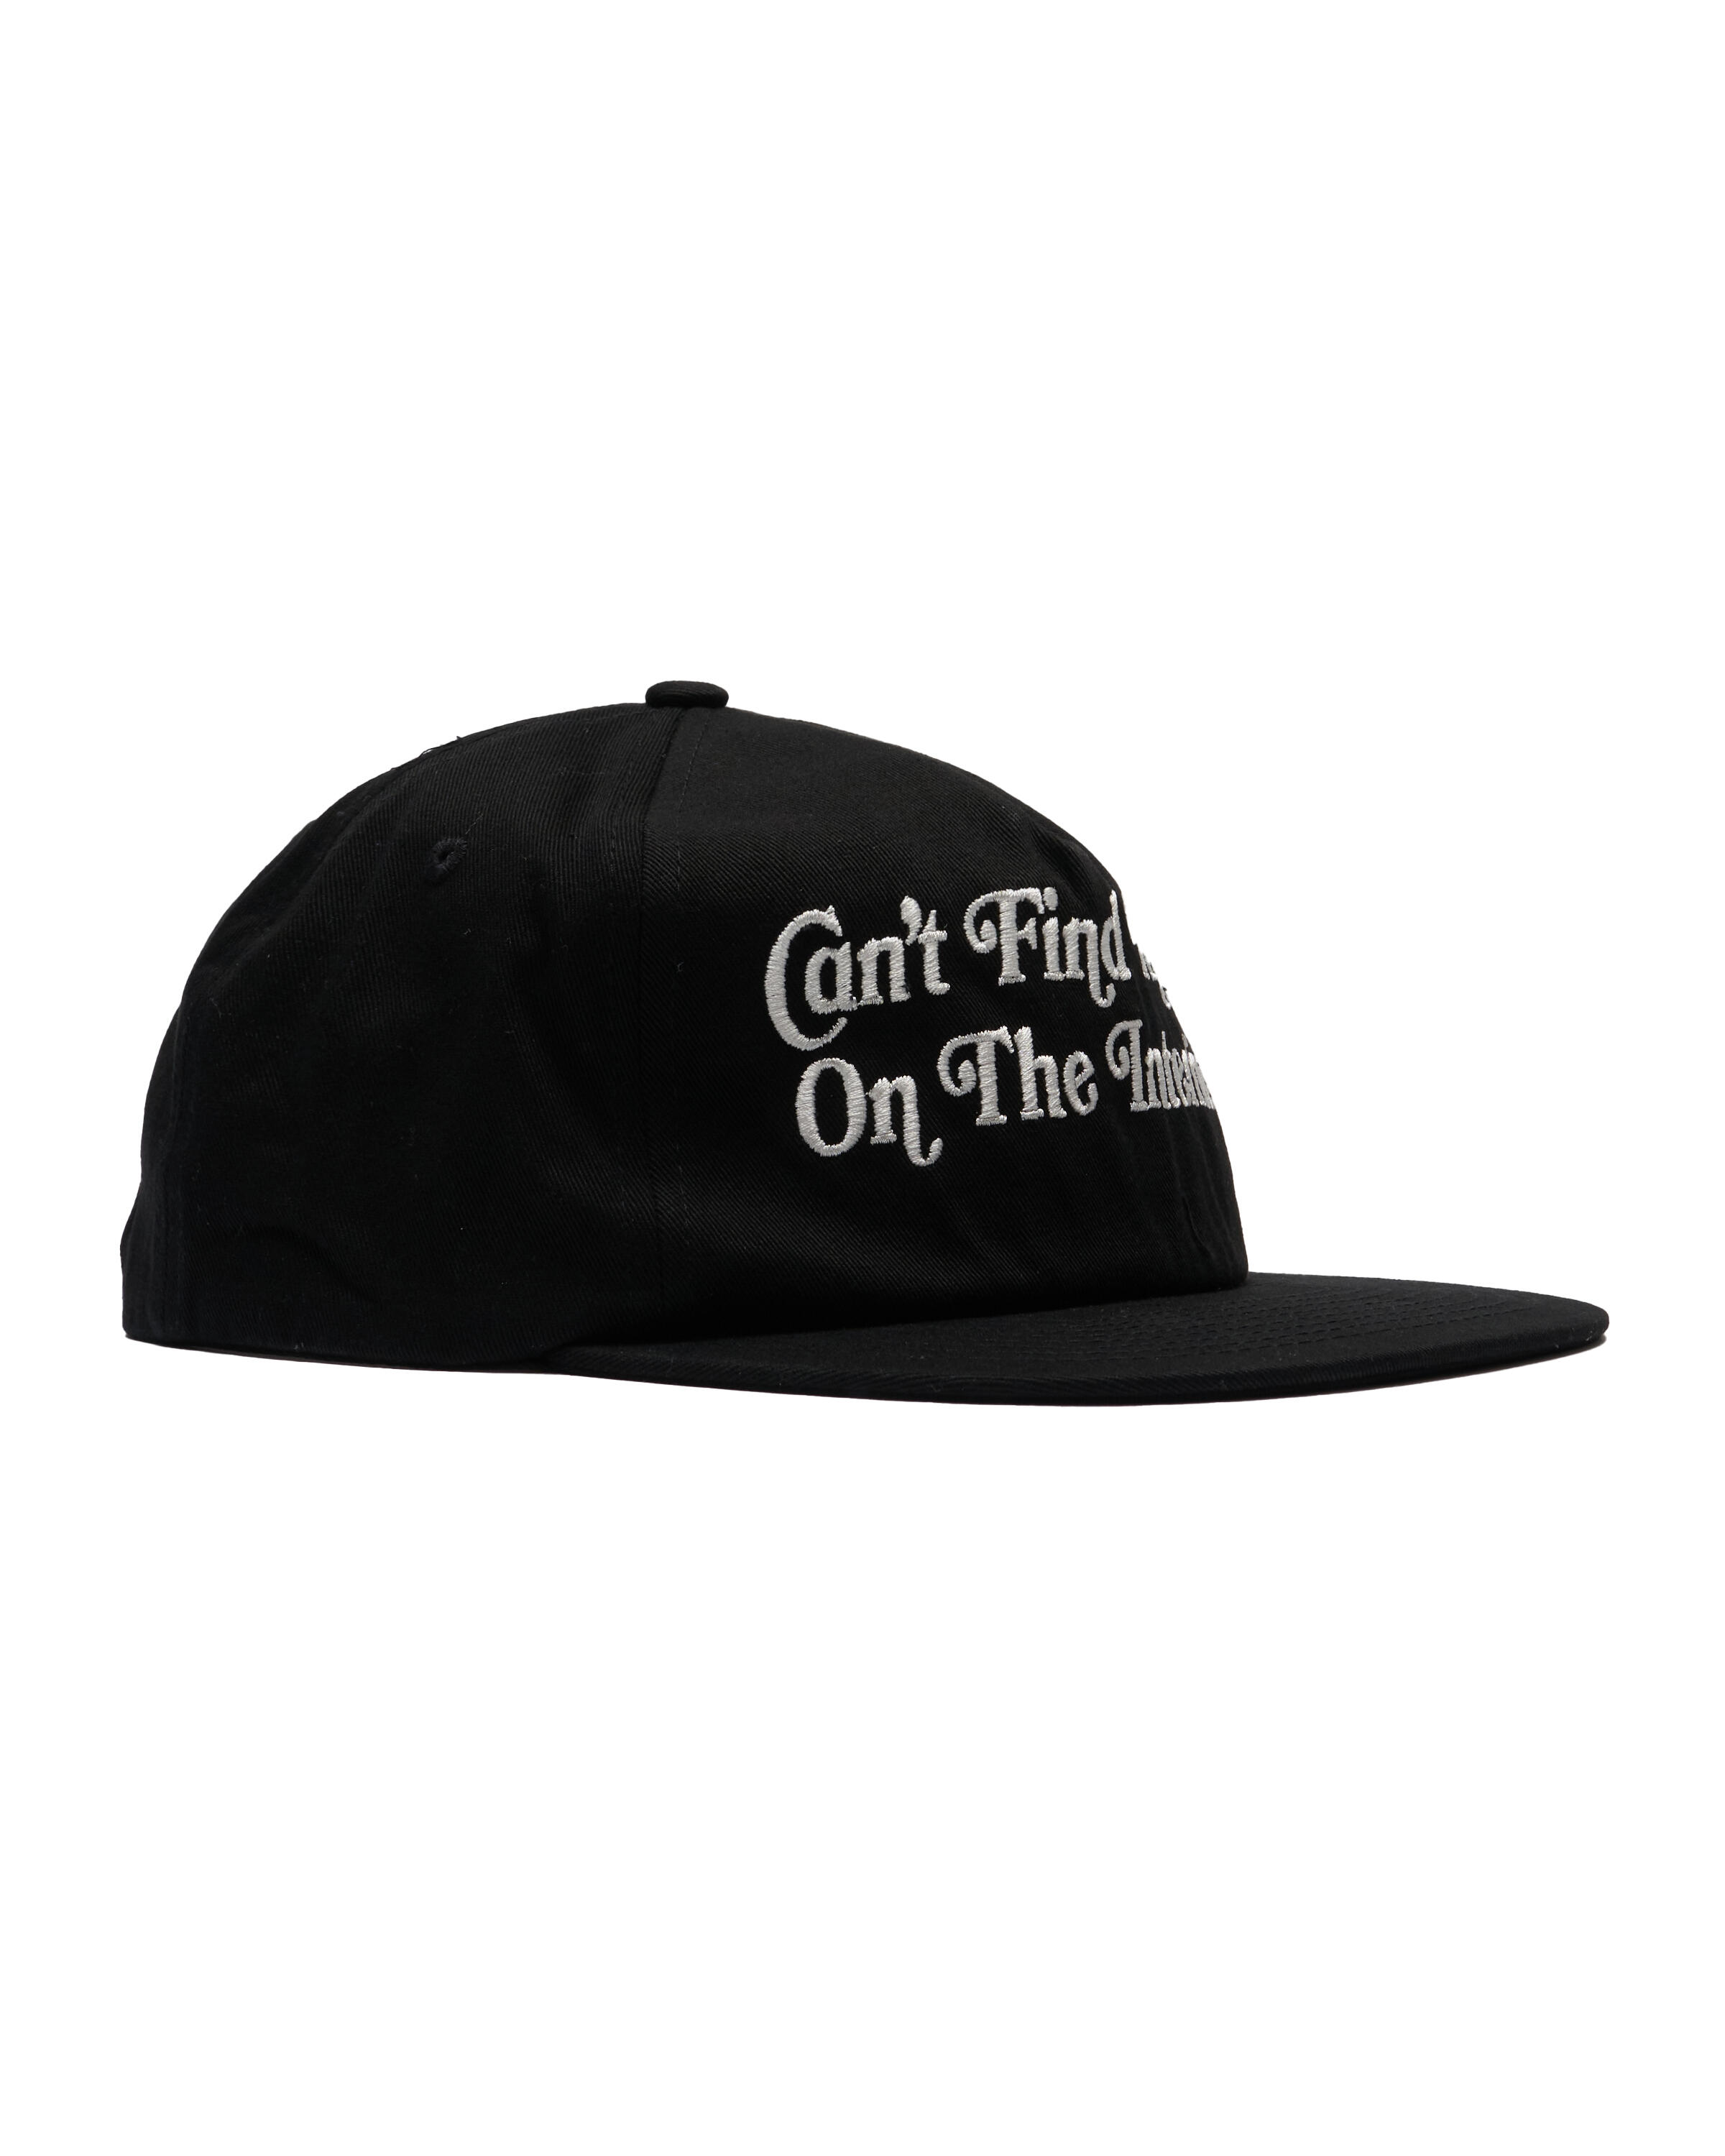 market dark web hat